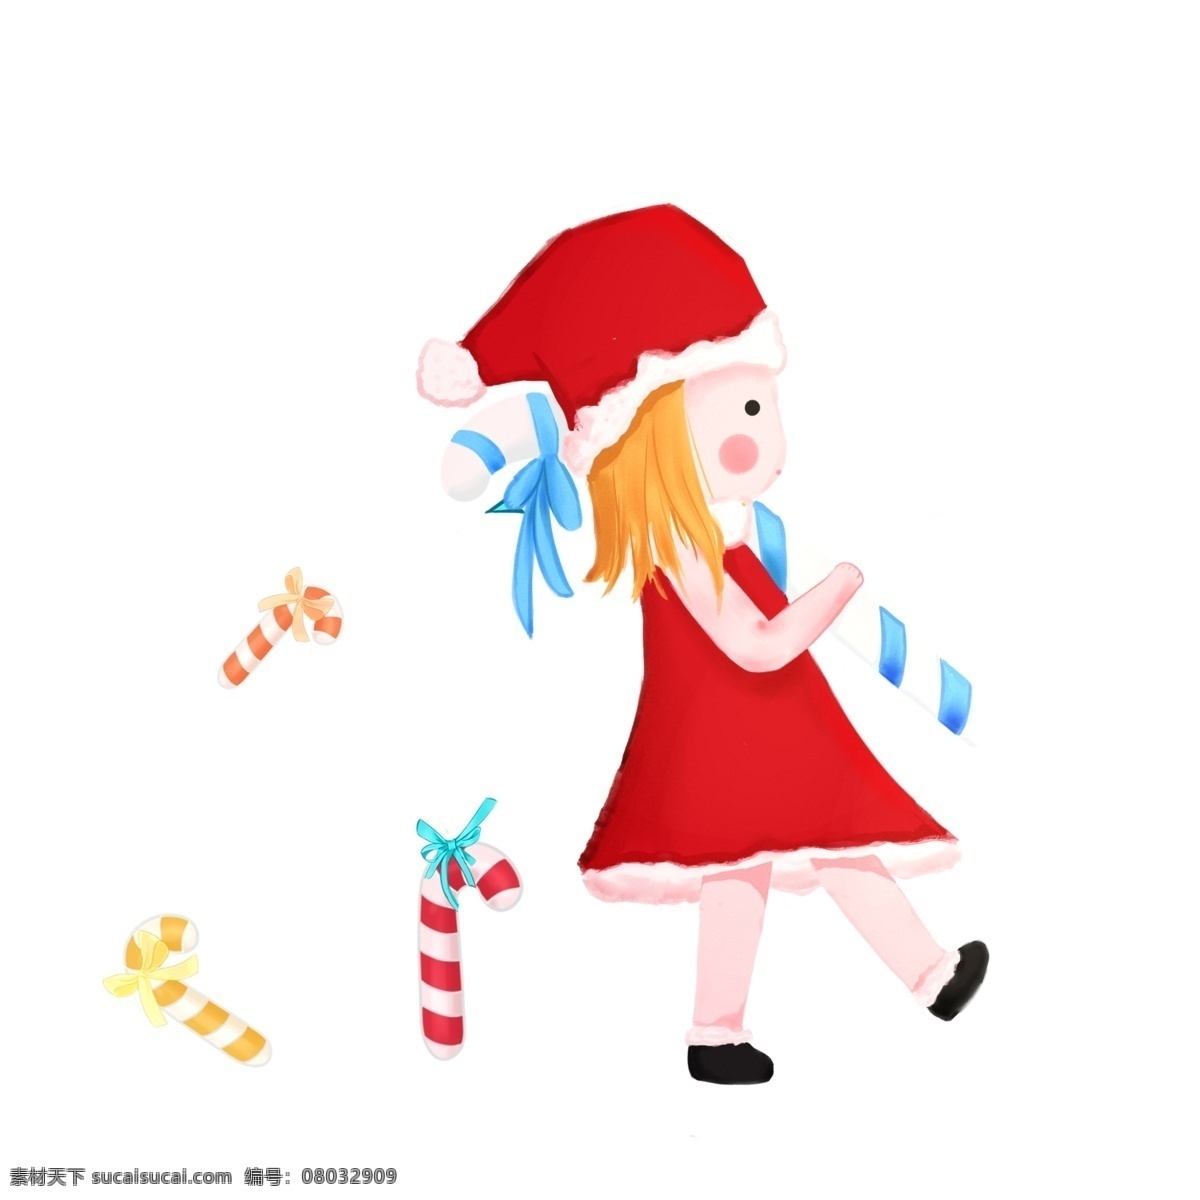 圣诞节 圣诞 糖果 小女孩 圣诞老人 圣诞帽 圣诞小女孩 可爱 卡通 手绘 立体 拐杖糖果 糖果女孩